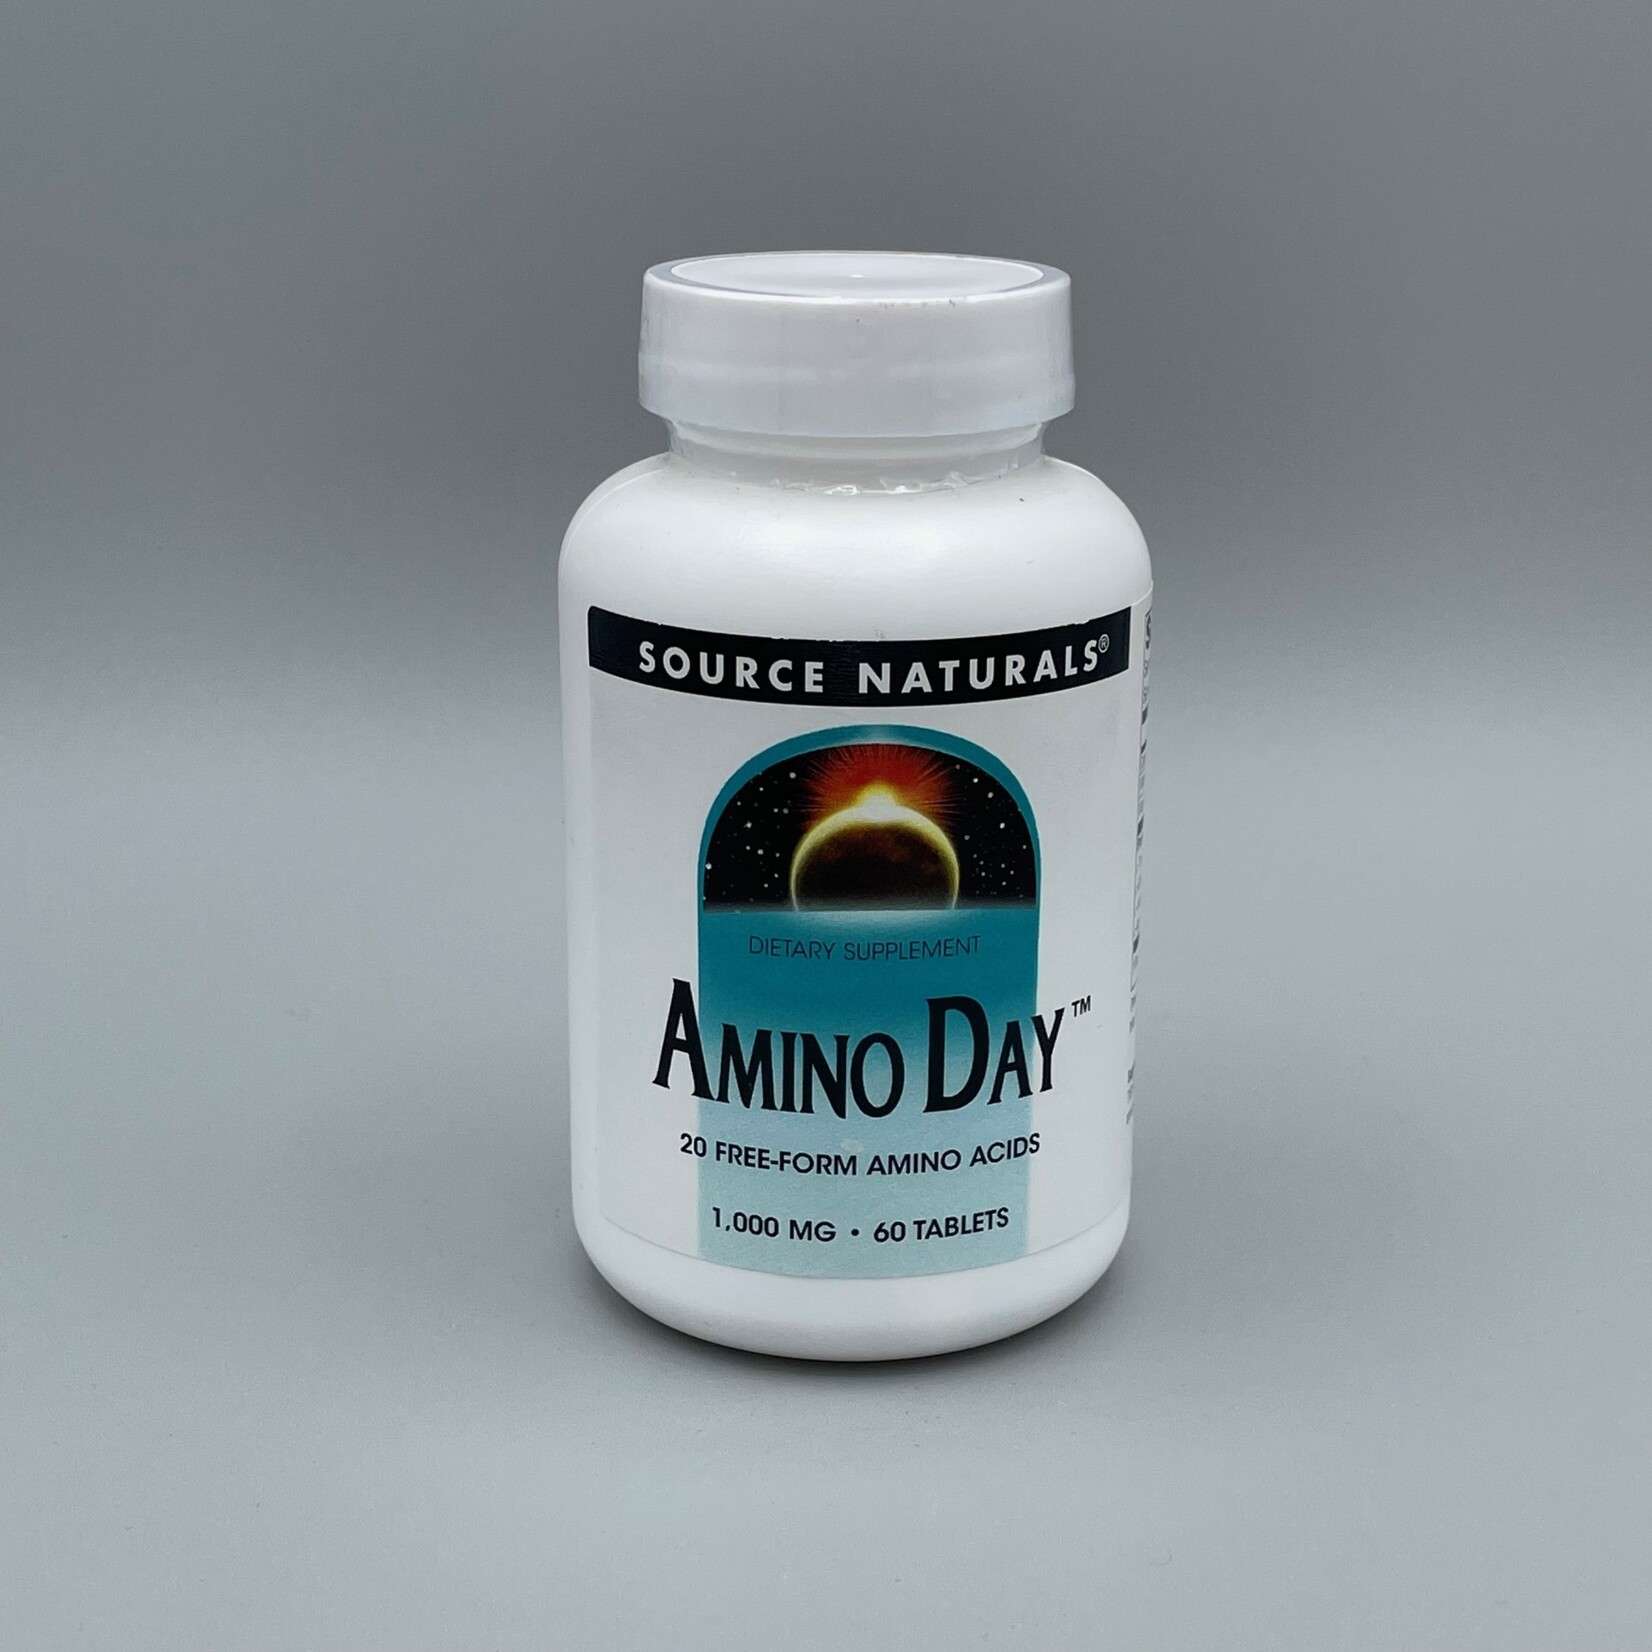 Source Naturals Amino Day (20 Free-Form Amino Acids) - 1,000 mg, 60 Tablets